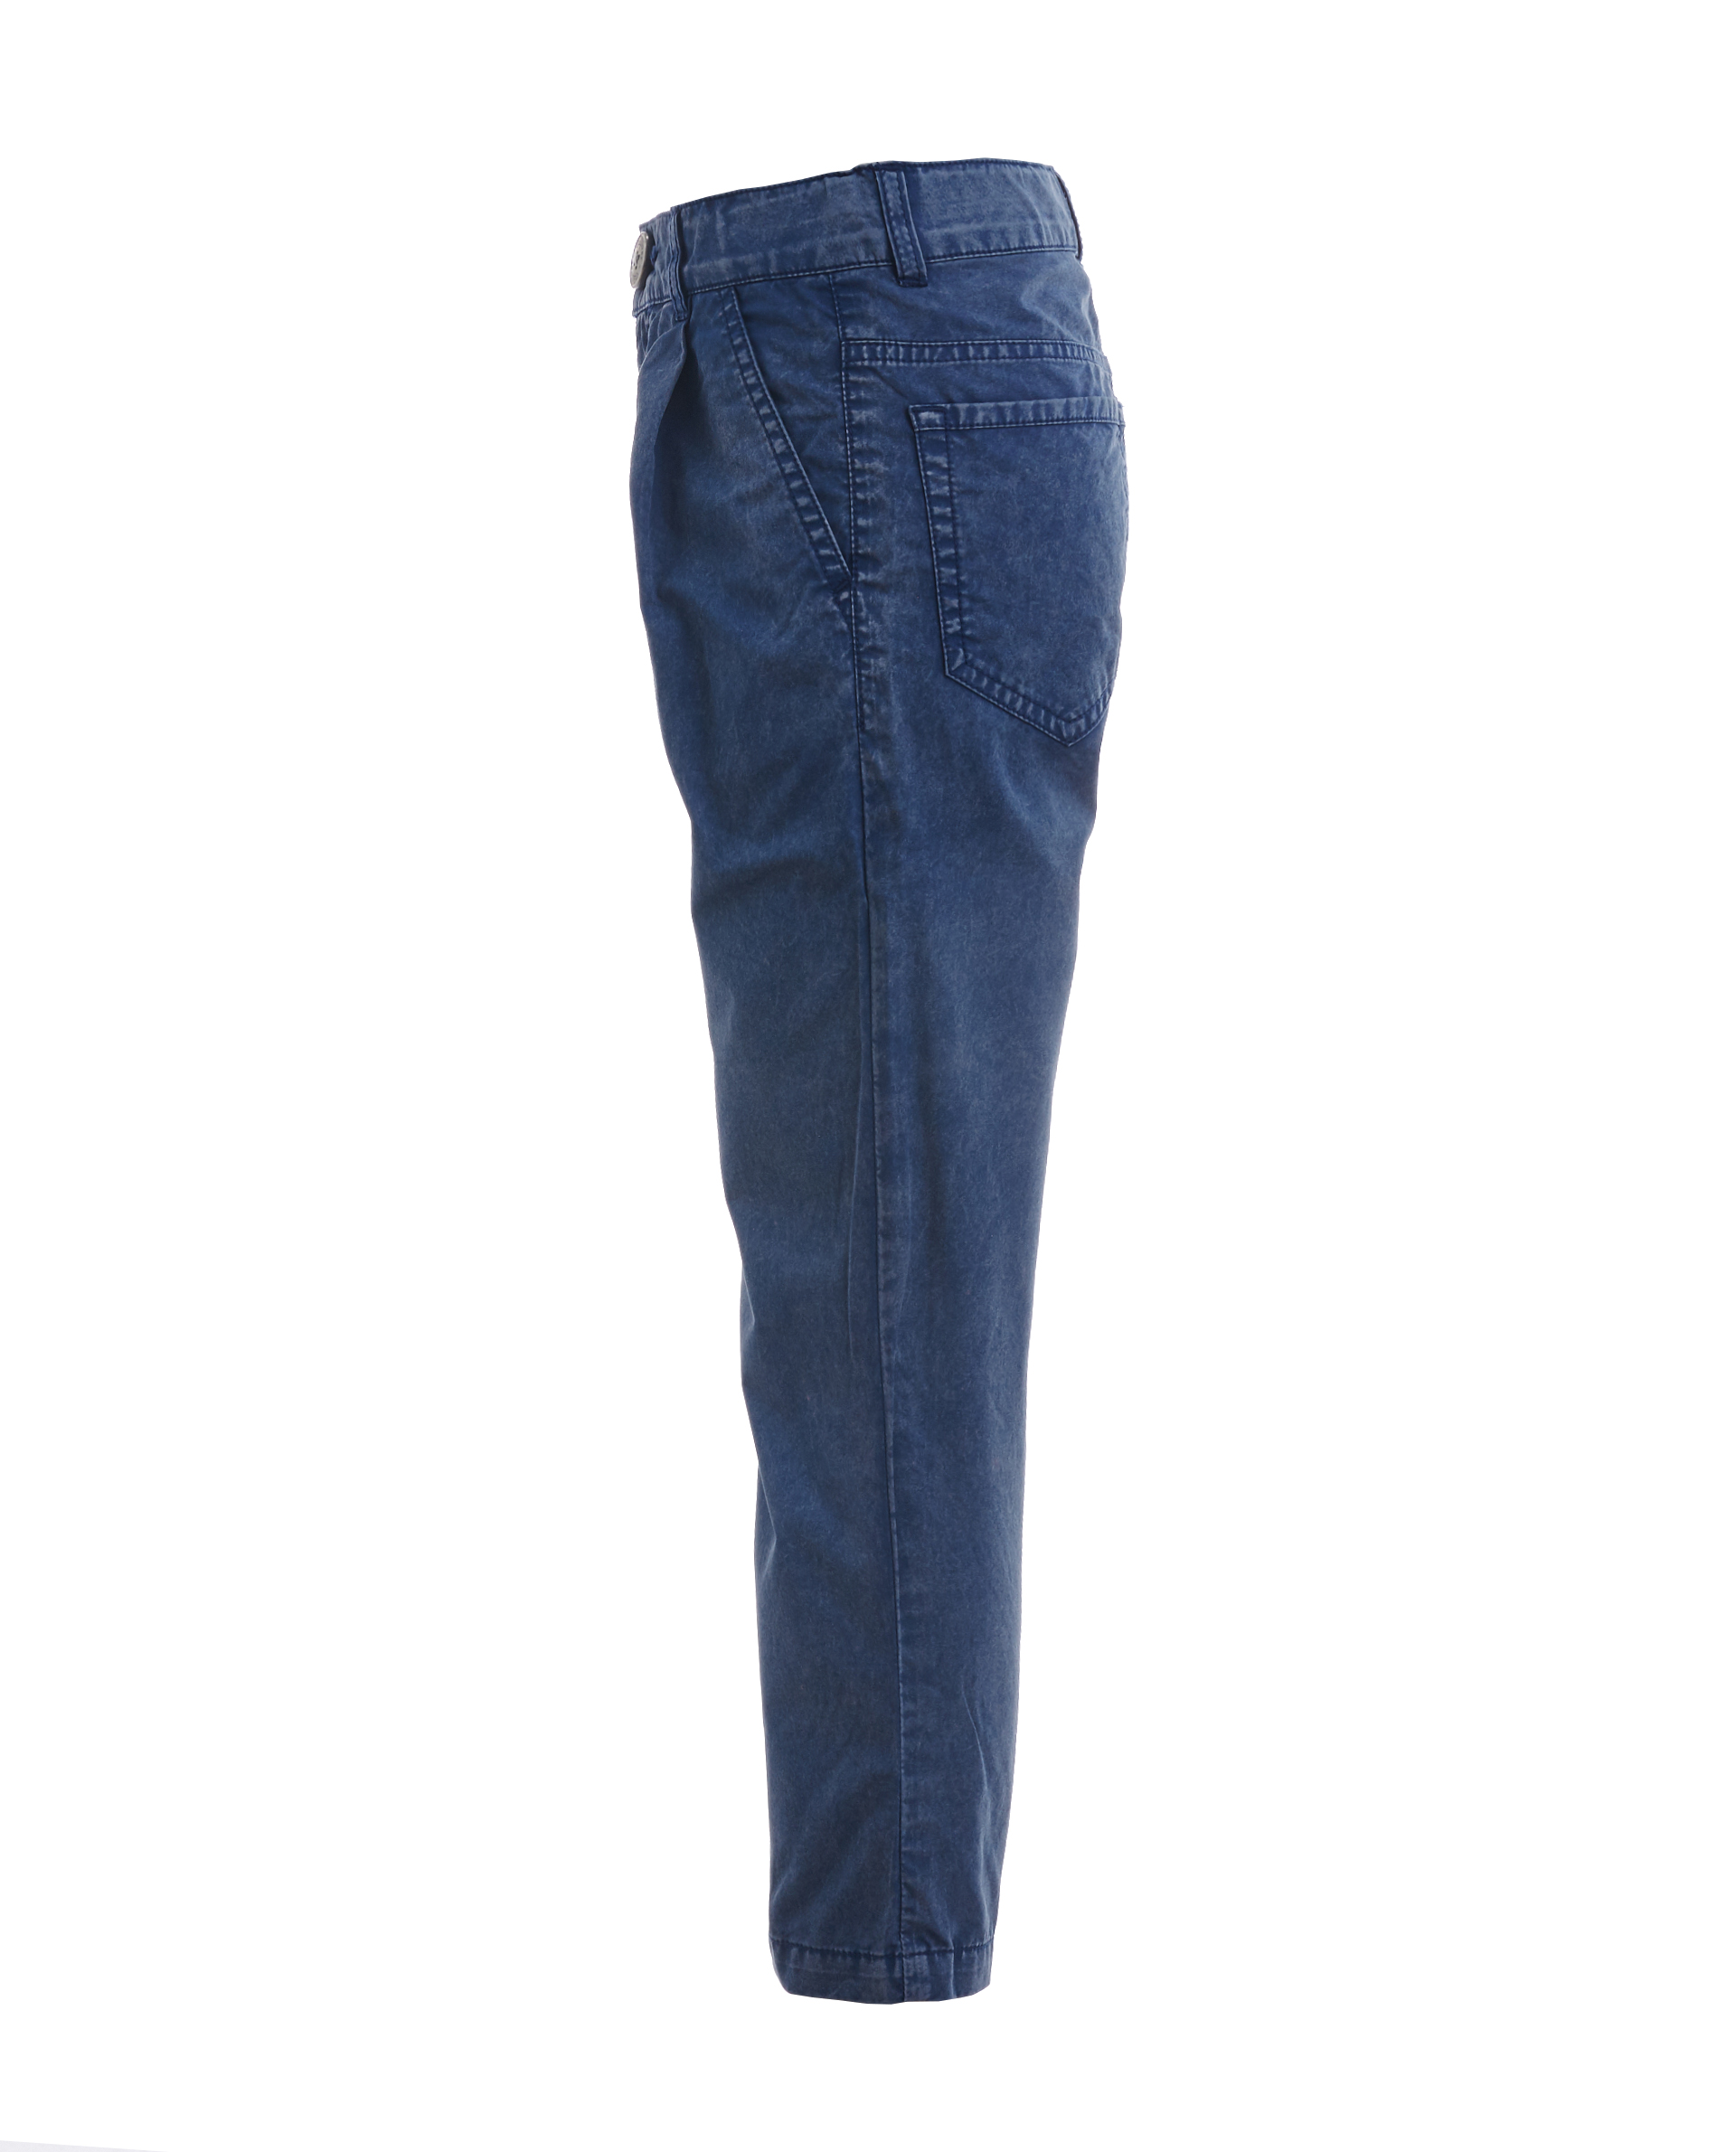 Синие брюки с винтажным эффектом Gulliver 11906BMC6305, размер 110, цвет синий - фото 3